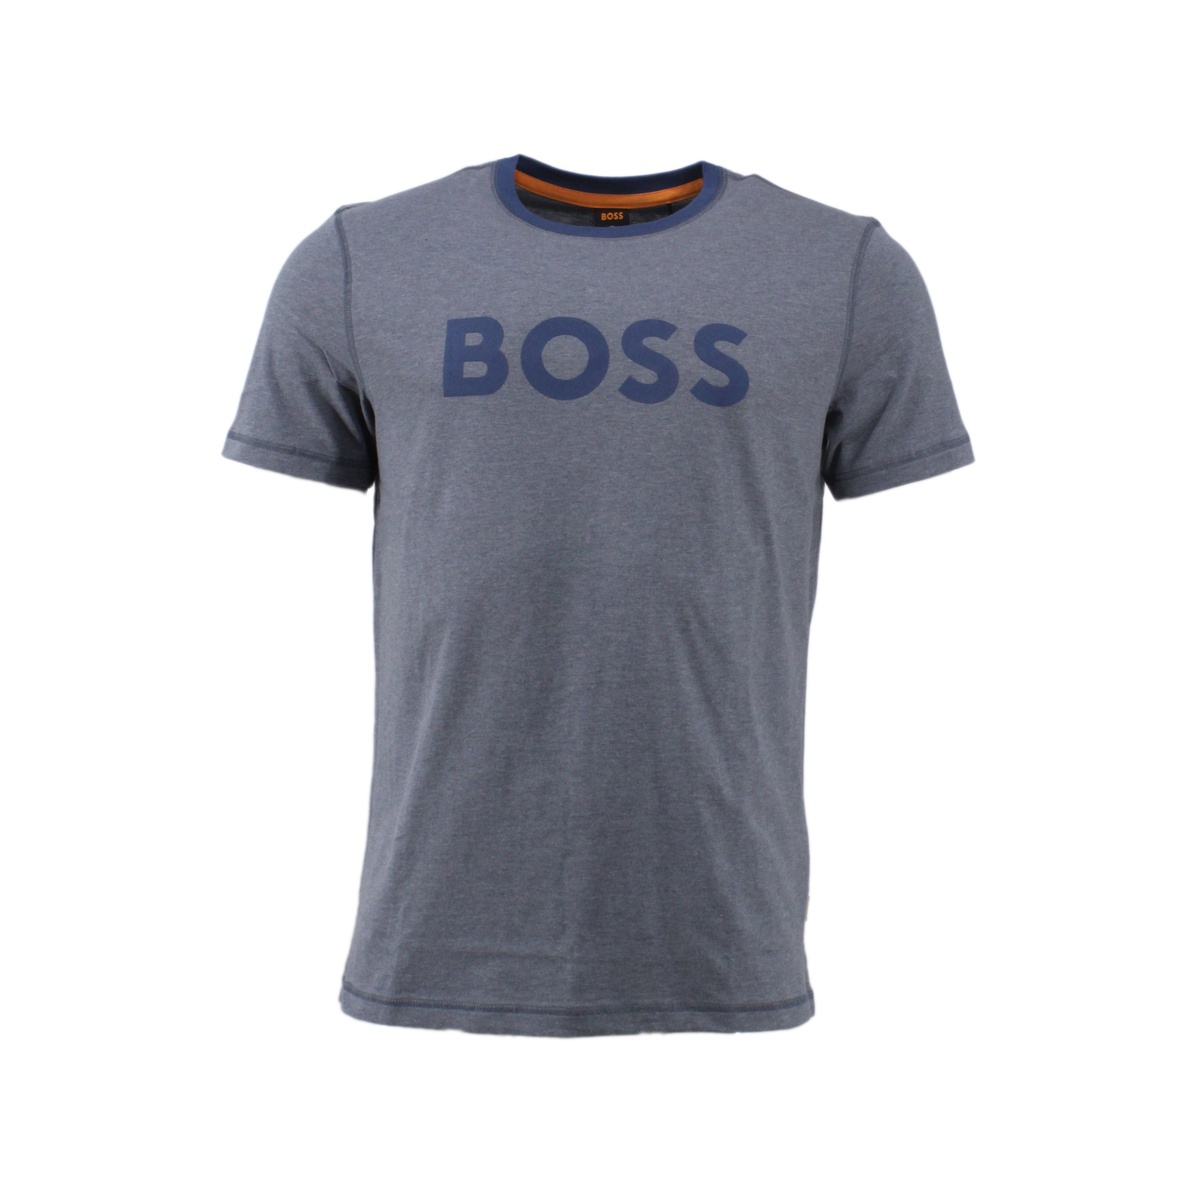 T-Shirt mit Boss-Schriftzug